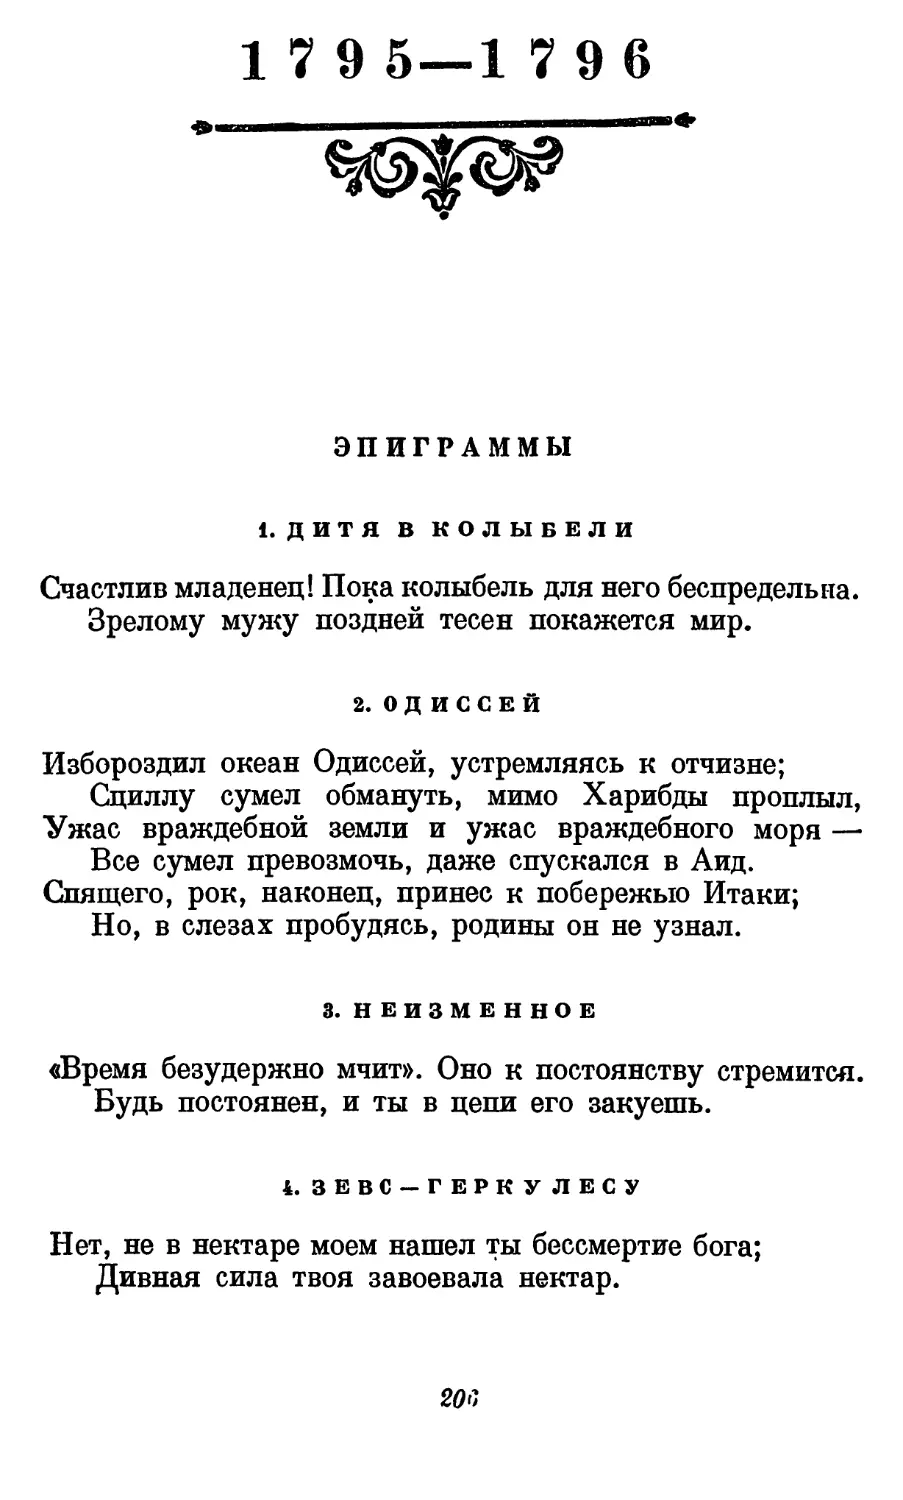 1795-1796
2. Одиссей
3. Неизменное
4. Зевс — Геркулесу